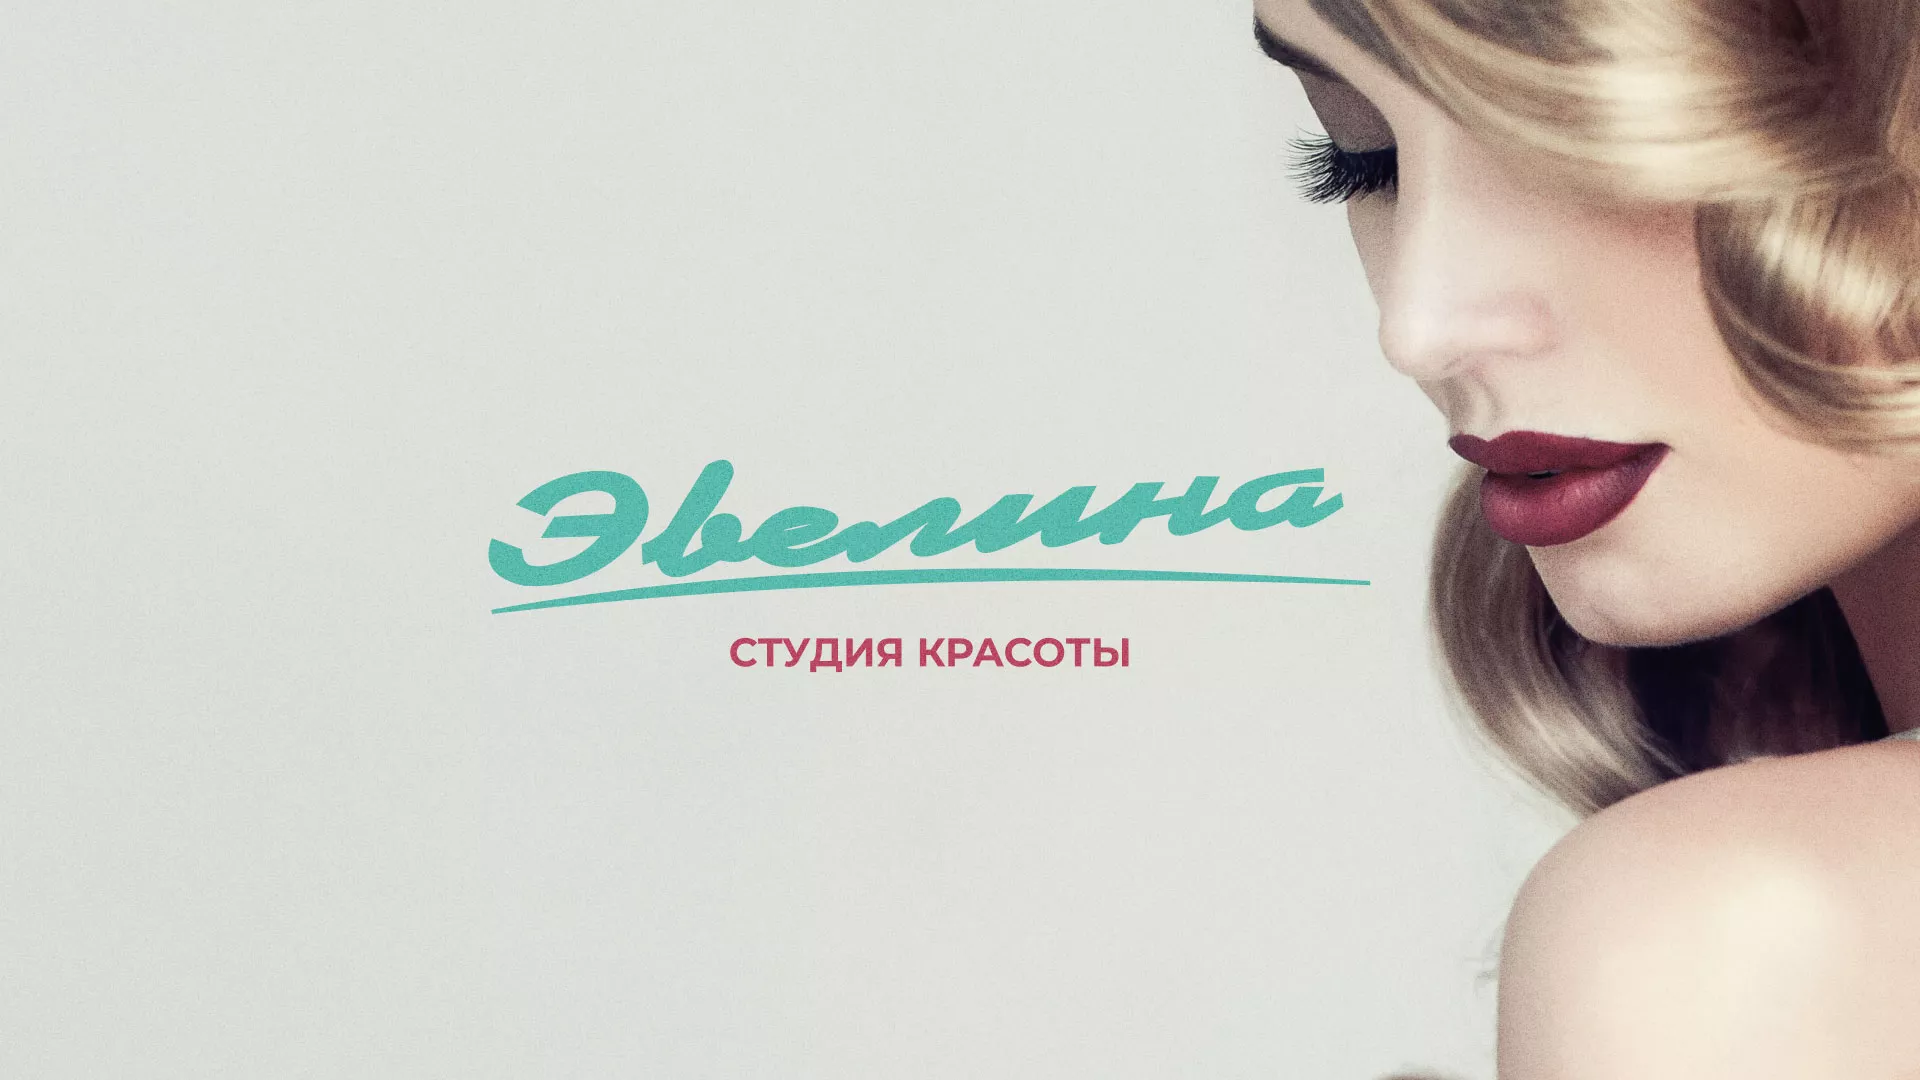 Разработка сайта для салона красоты «Эвелина» в Пушкине